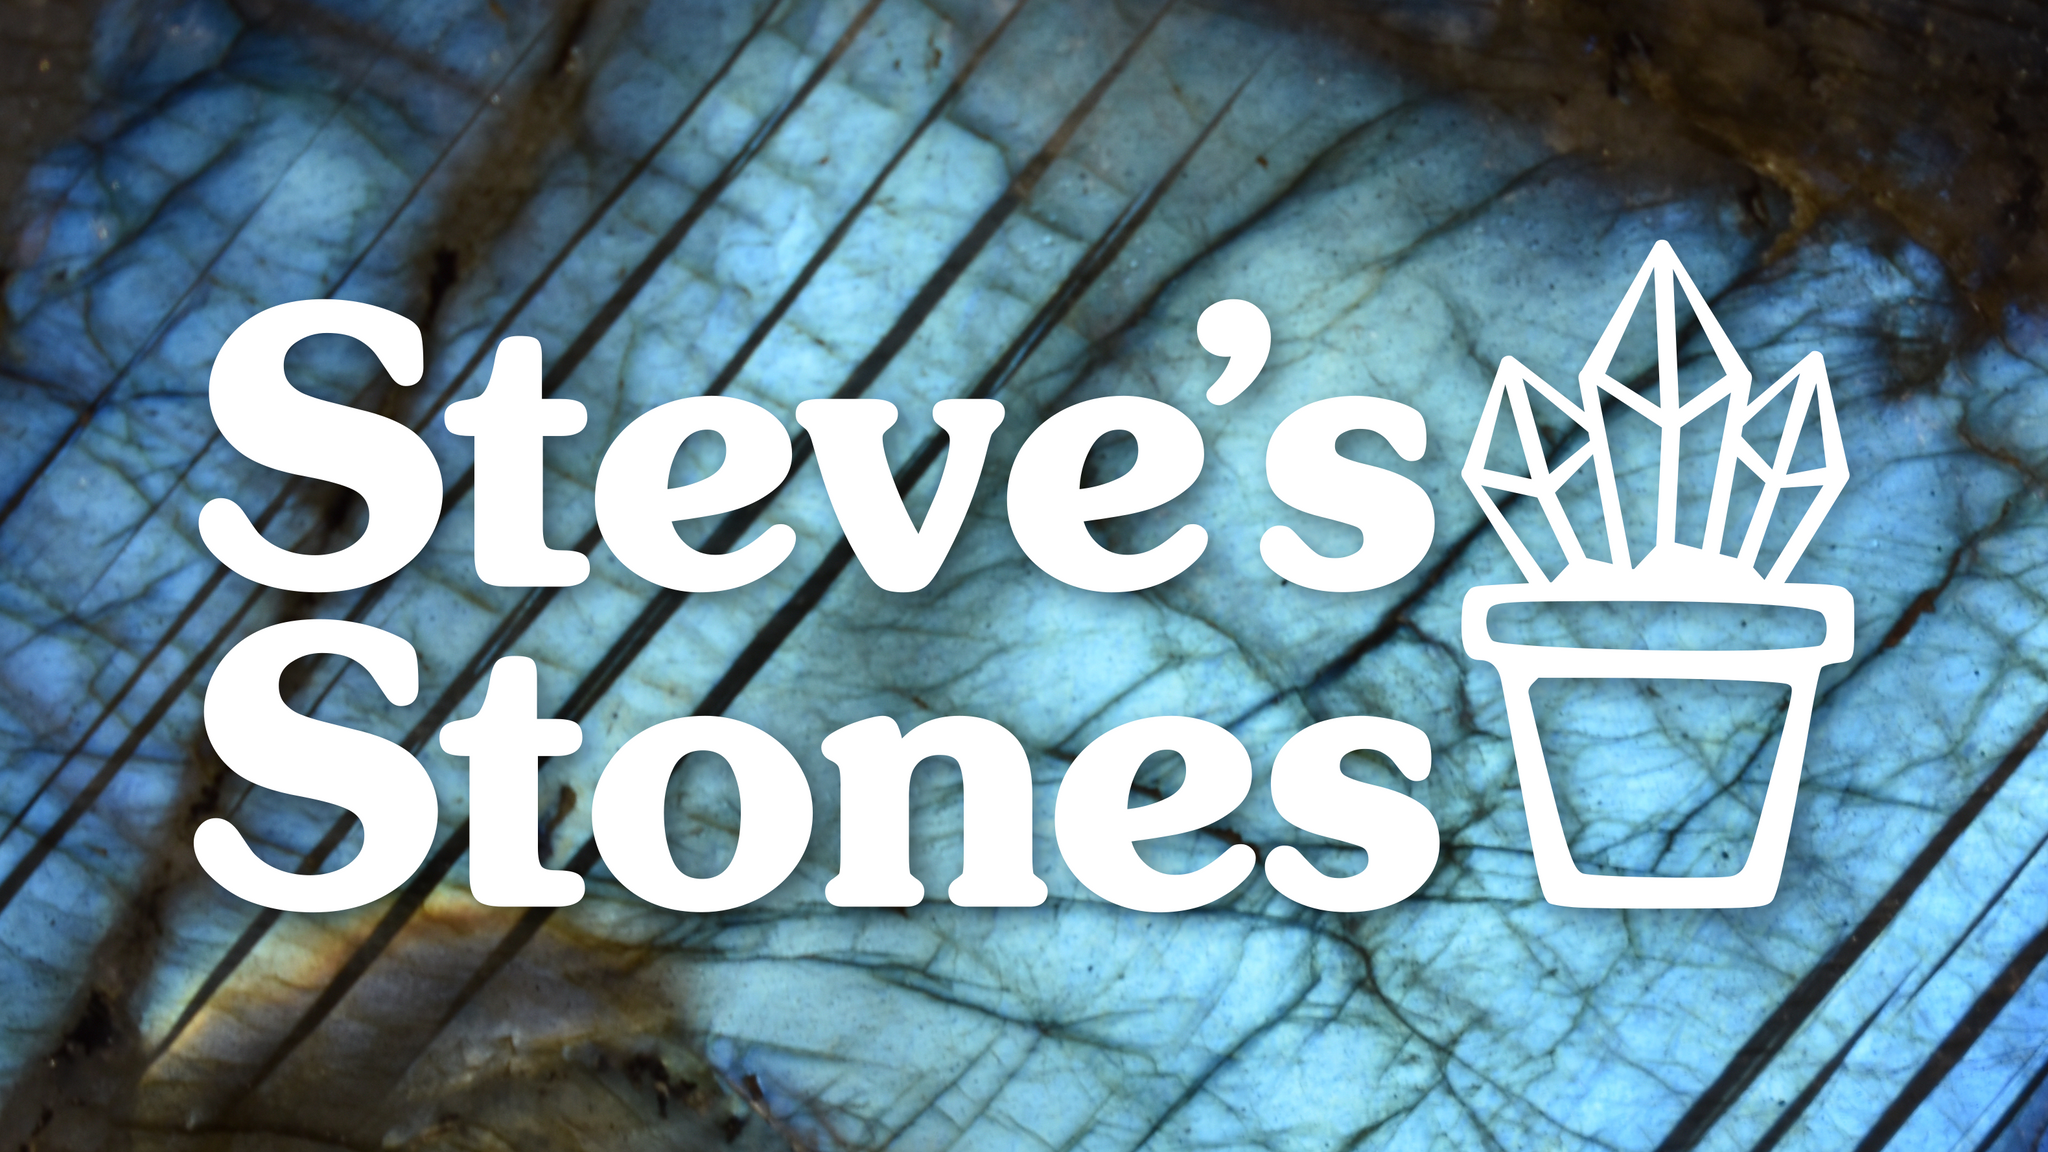 Steve's Stones